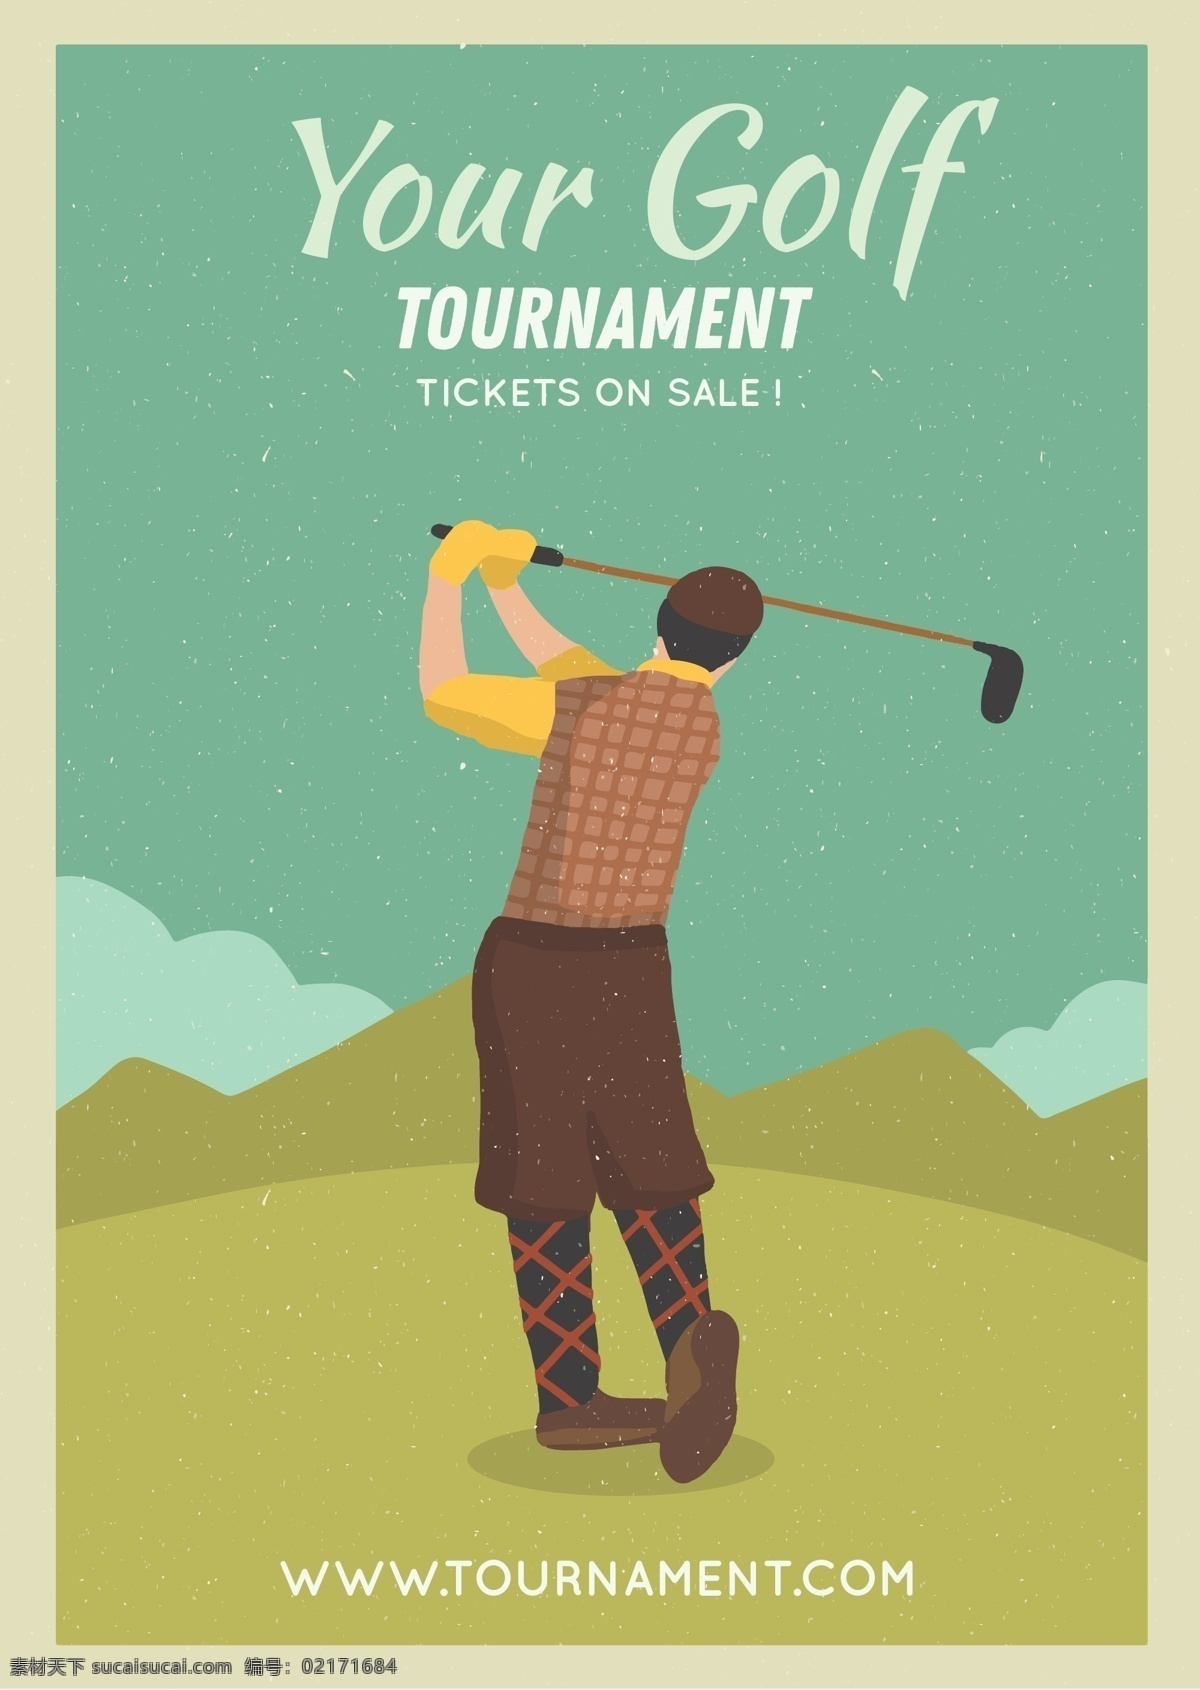 高尔夫球 高尔夫运动 矢量高尔夫 小白球 户外体育运动 高尔夫球杆 高尔夫球场 运动健身 球动 打高尔夫 卡通高尔夫球 高尔夫海报 运动海报 高尔夫俱乐部 卡通设计